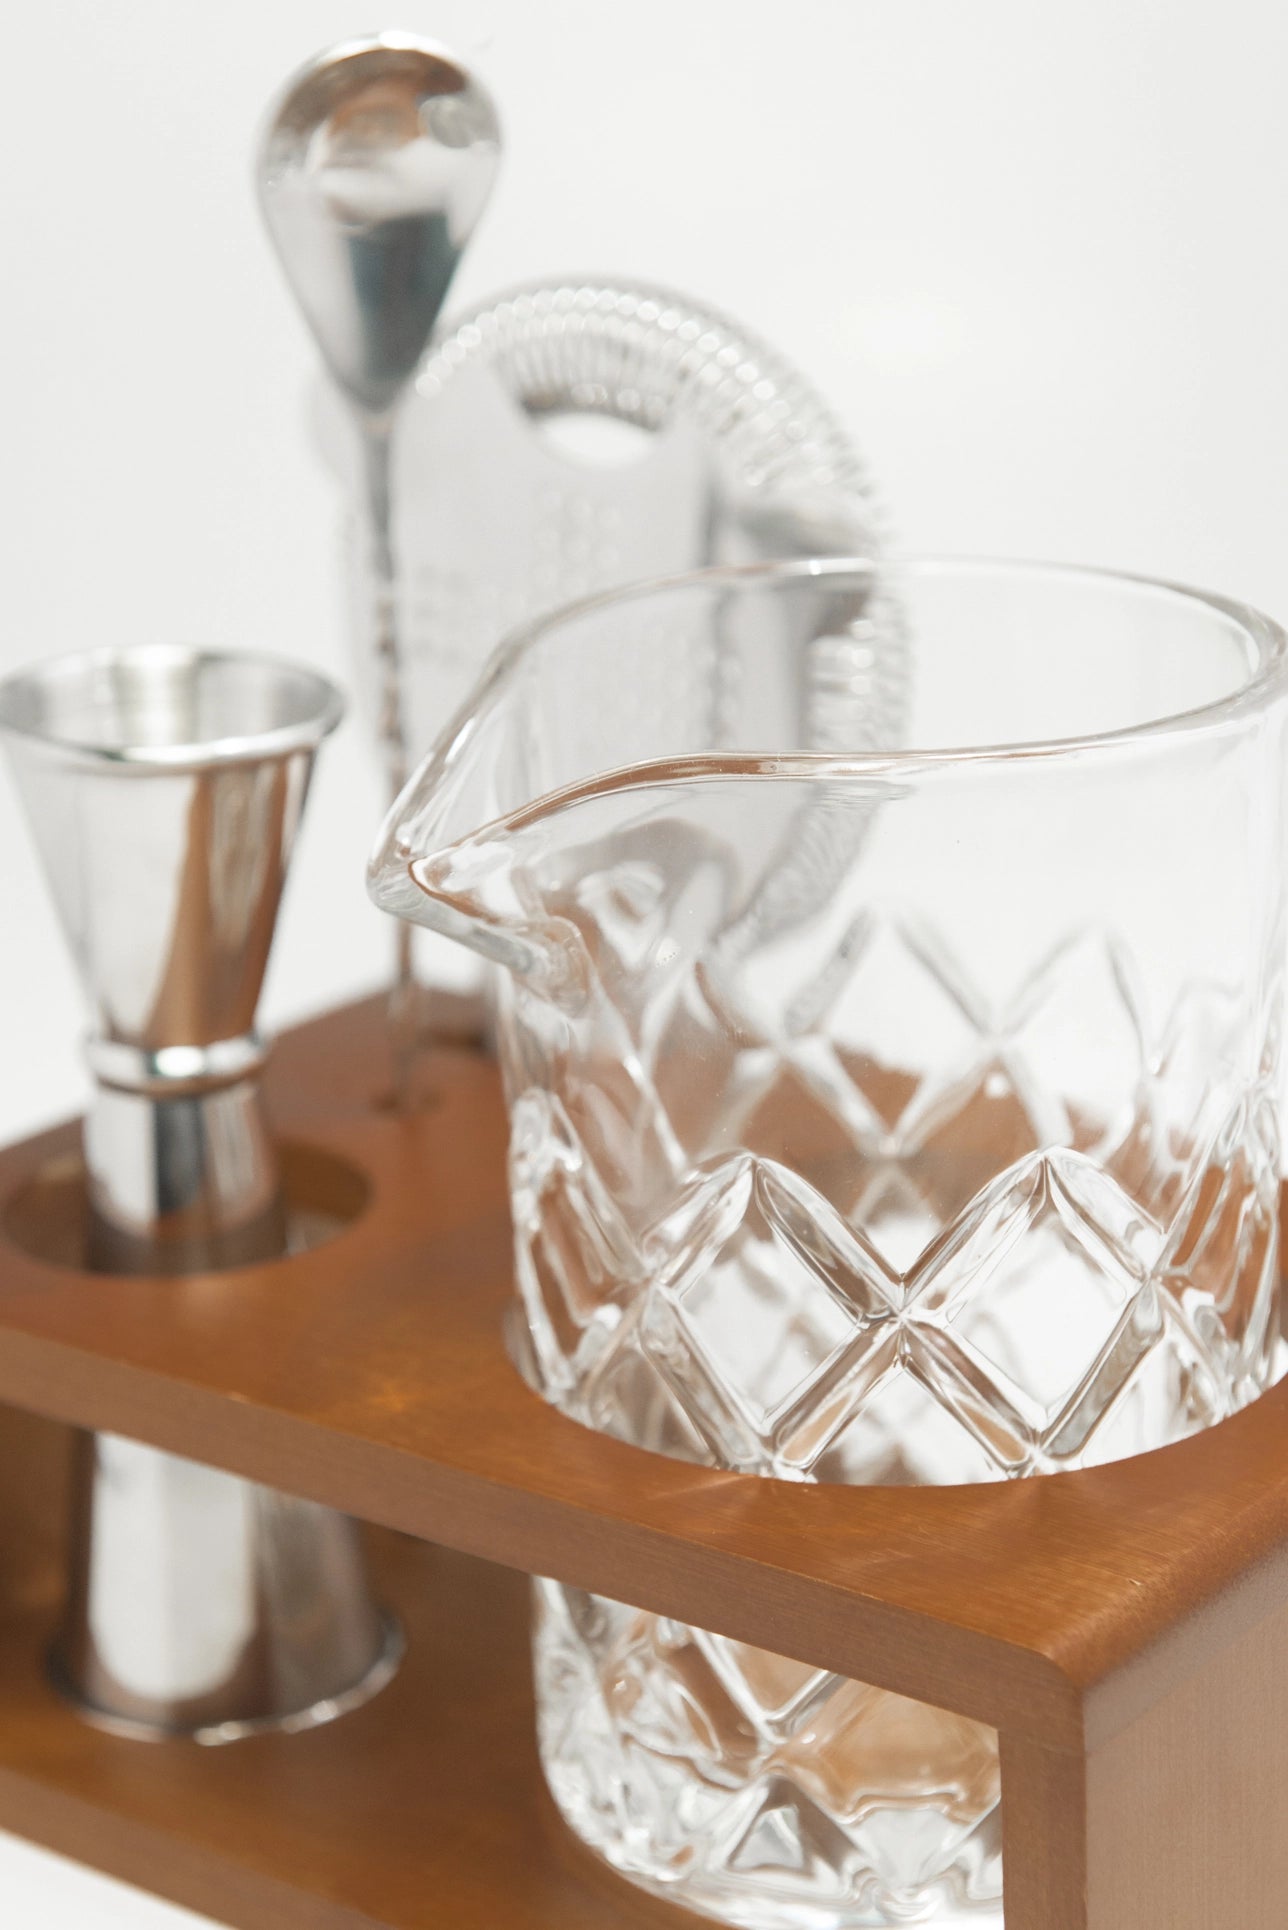 Premium Home Bartender Cocktail Kit - Glass Stirring